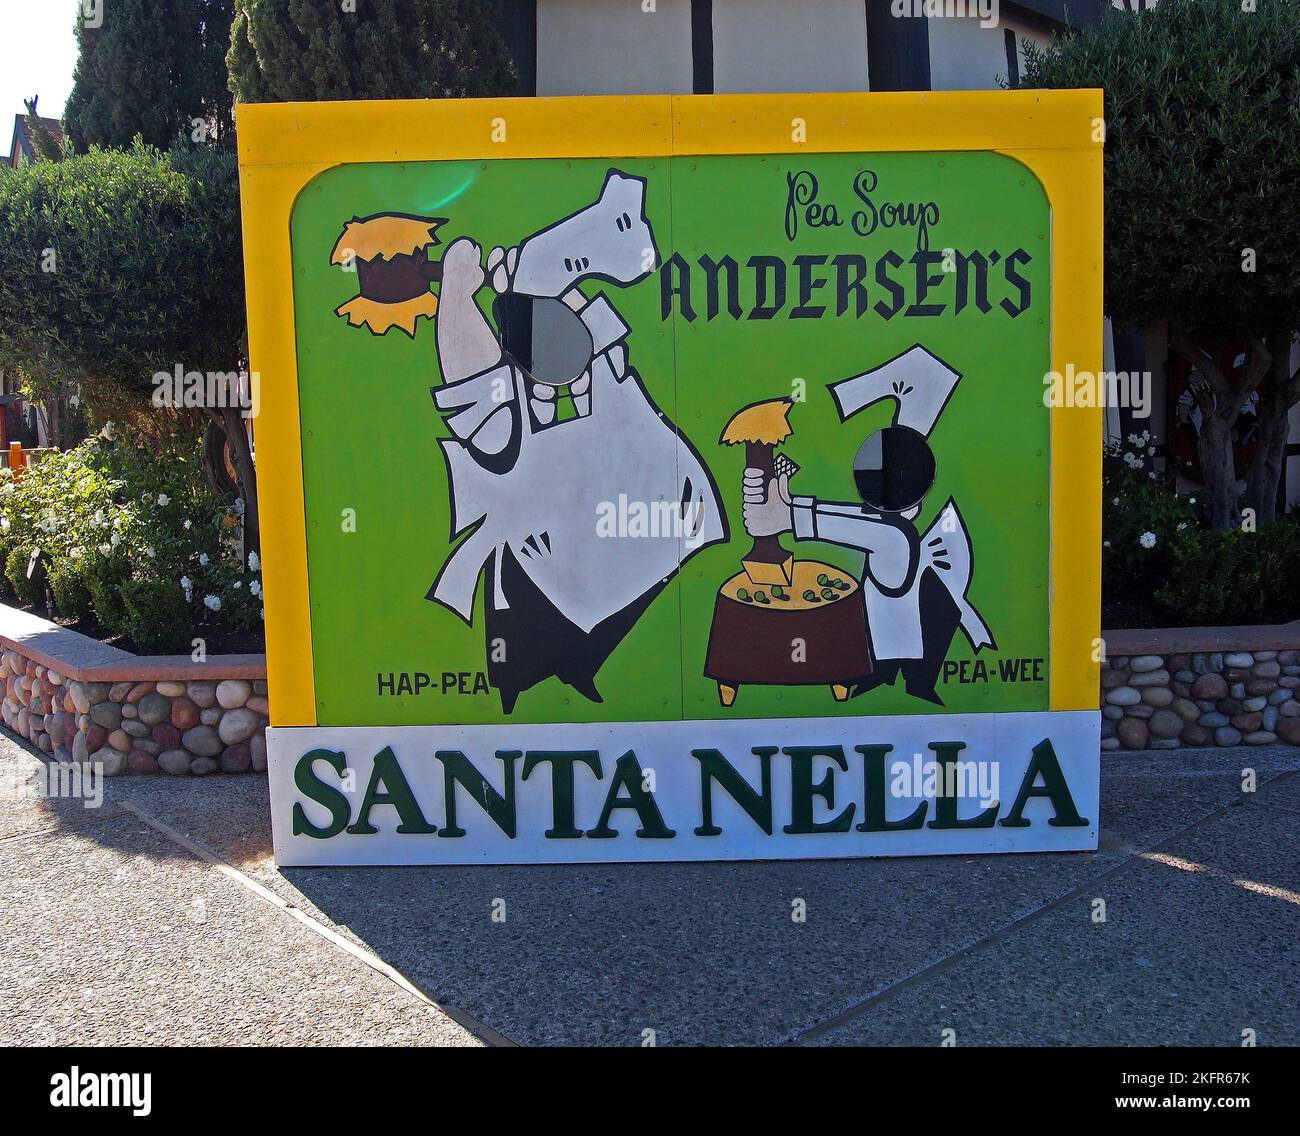 Andersen's pea soup sign in Santa Nella, California Stock Photo